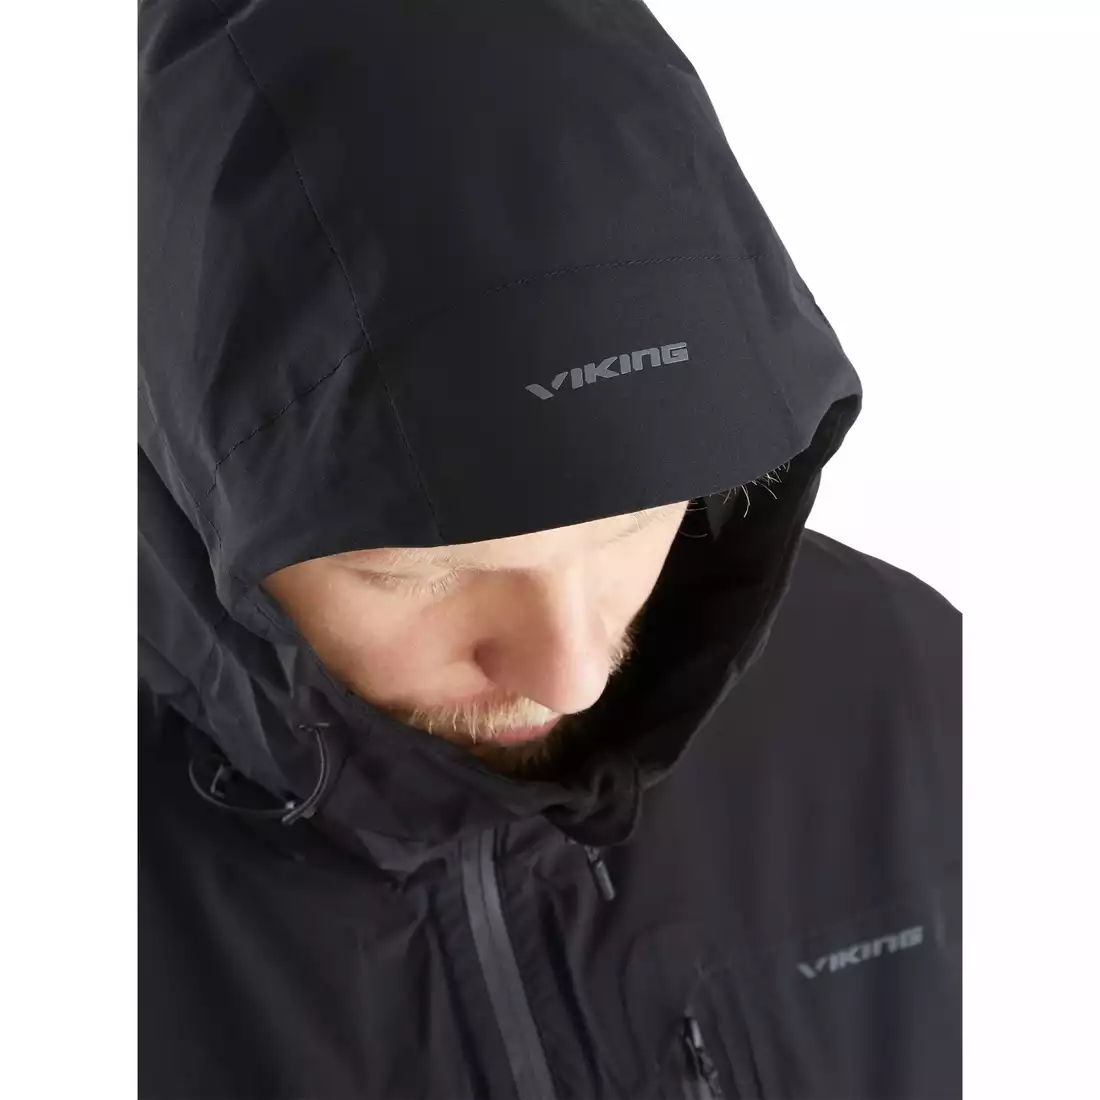 Jachetă de ploaie pentru bărbați Viking Trek Pro Man 700/23/0905 negru